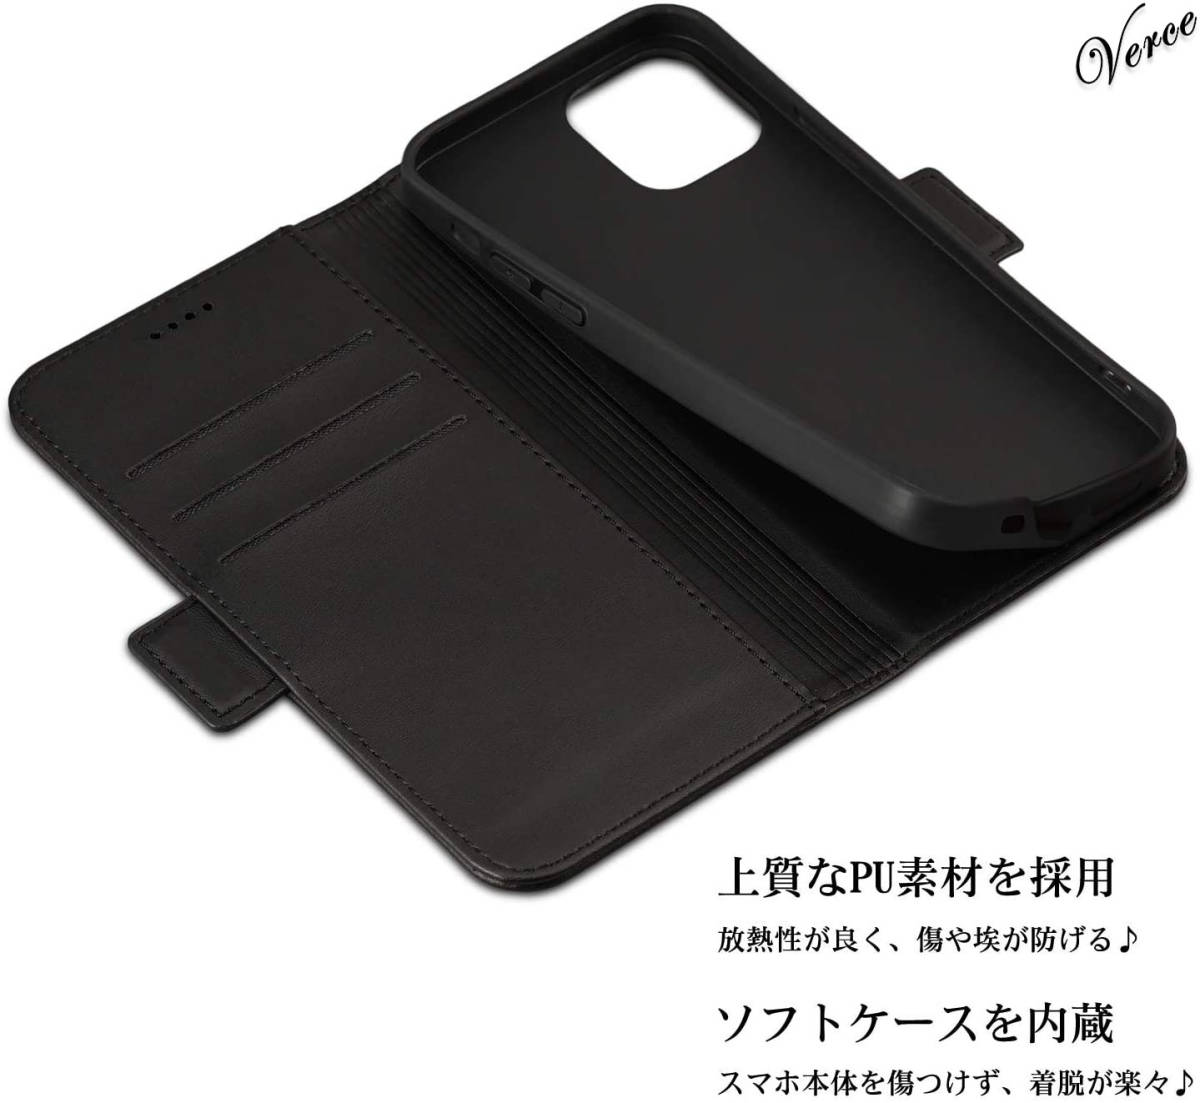 【2種類のスタンドモード】 モダンブラック 手帳型ケース iPhone 12 / Pro 6.1インチ ストラップホール カバー サイドマグネット式ベルト